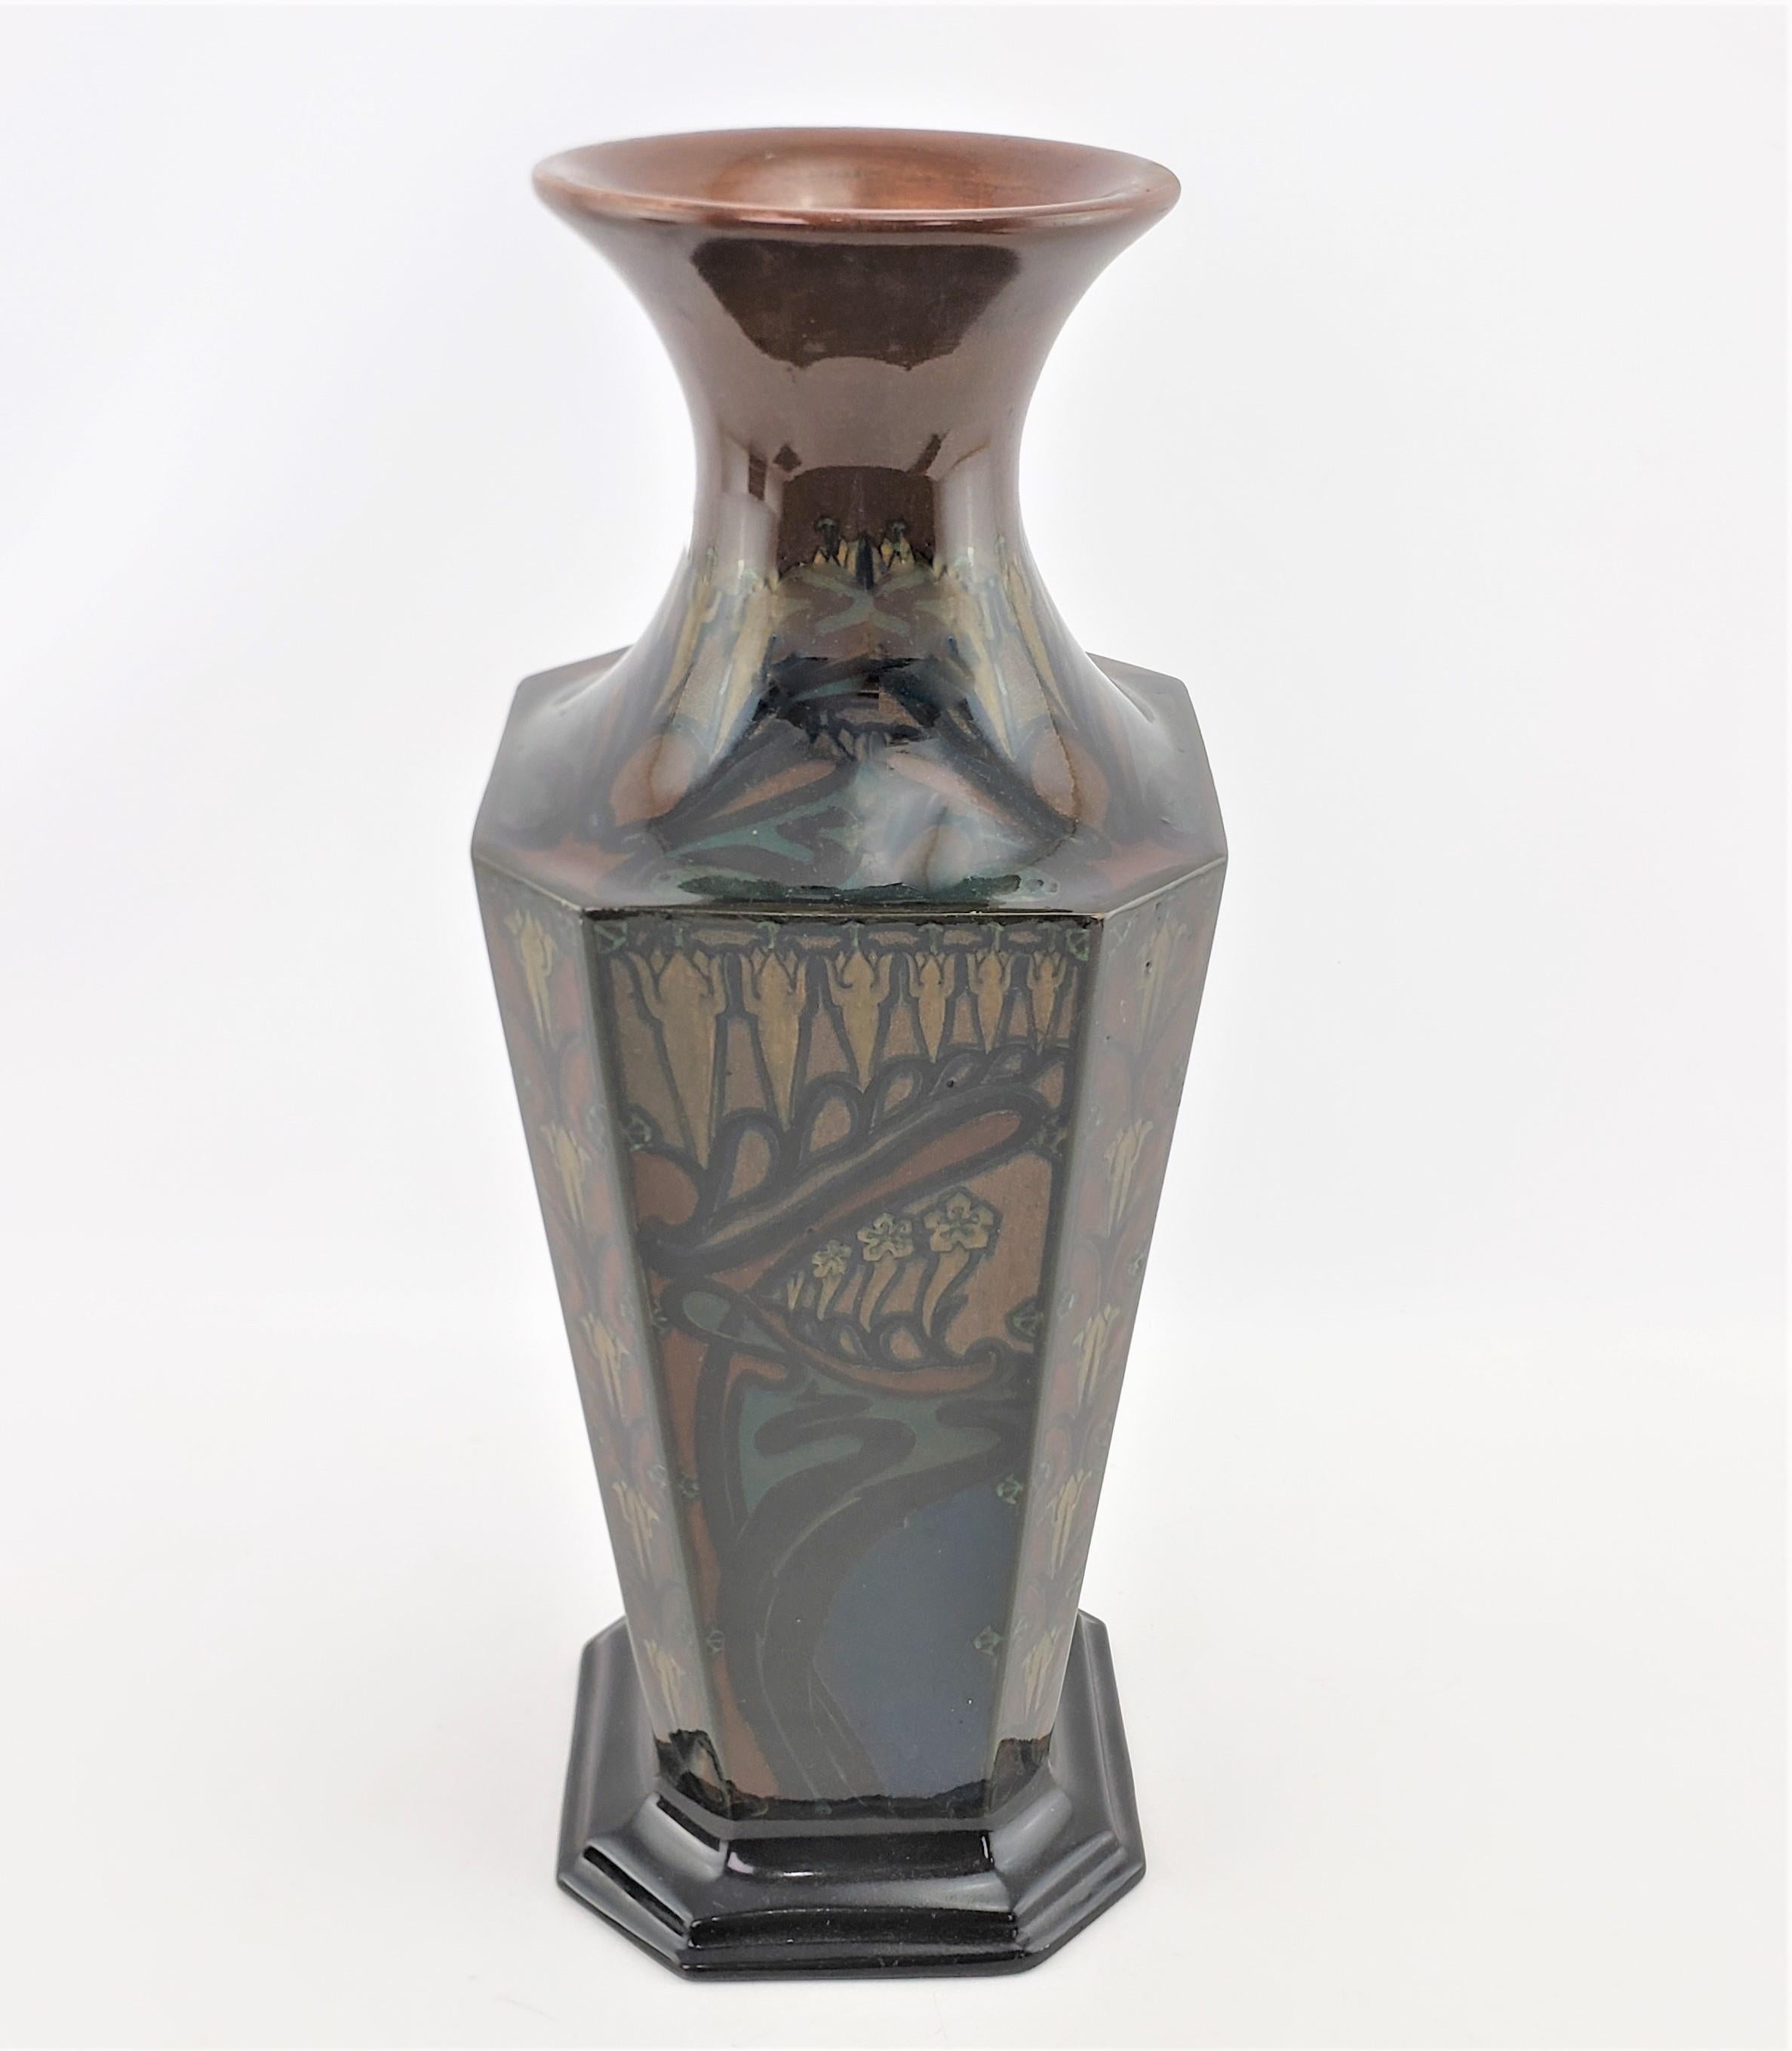 Ce grand et important vase en poterie d'art a été fabriqué par la célèbre usine de porcelaine de Rozenburg, en Hollande, vers 1900, dans un style Art nouveau. Ce vase à huit côtés est fabriqué en terre cuite et a la forme d'un vase effilé à huit